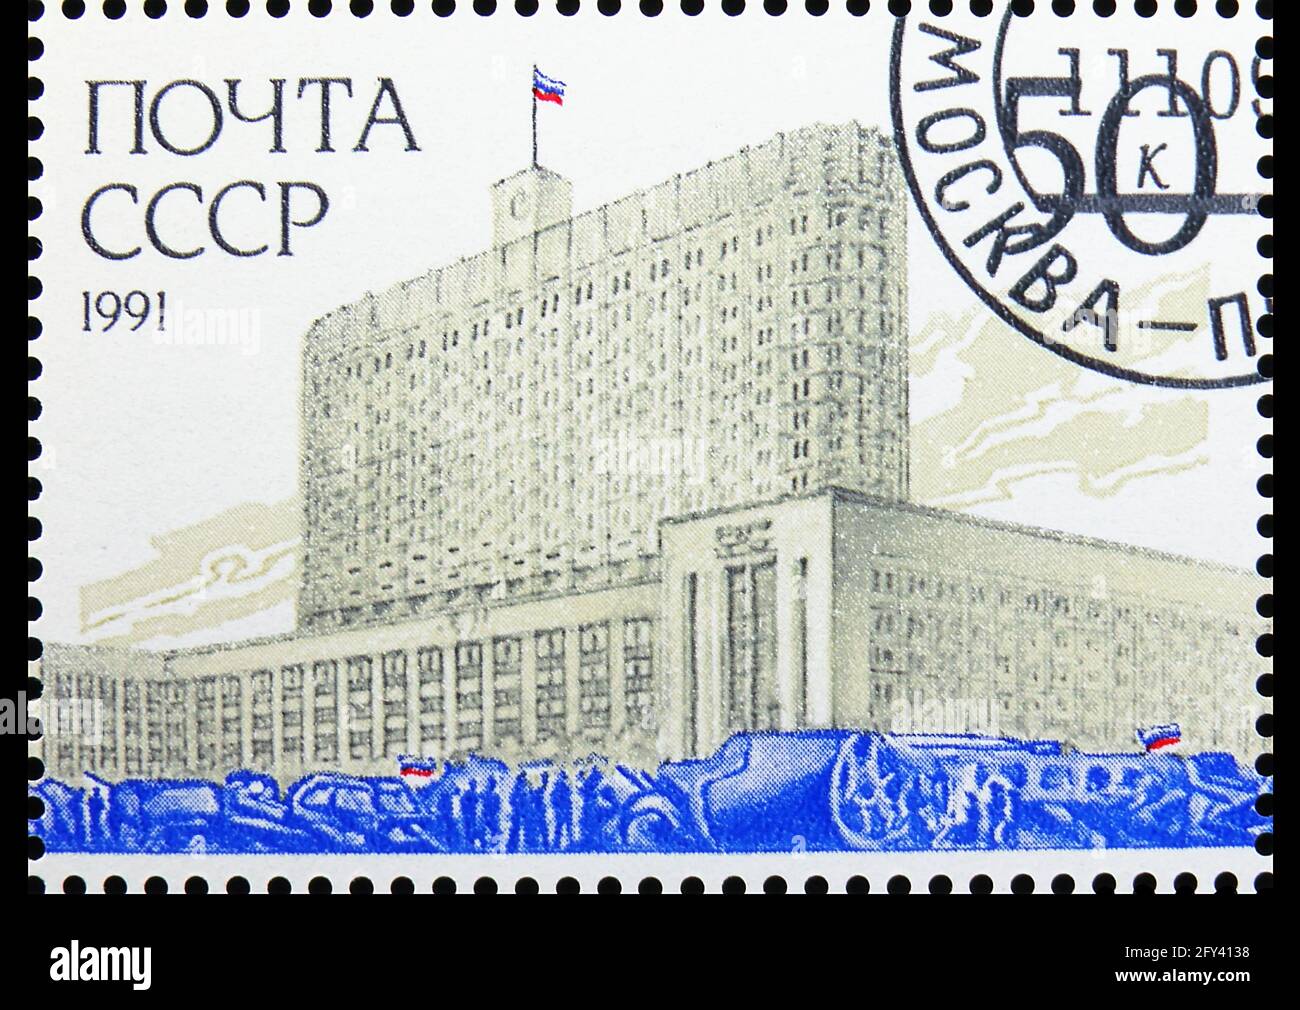 MOSCÚ, RUSIA - 31 DE AGOSTO de 2019: Sello postal impreso en la Unión Soviética (Rusia) dedicado a la derrota del intento de golpe, serie, alrededor de 1991 Foto de stock